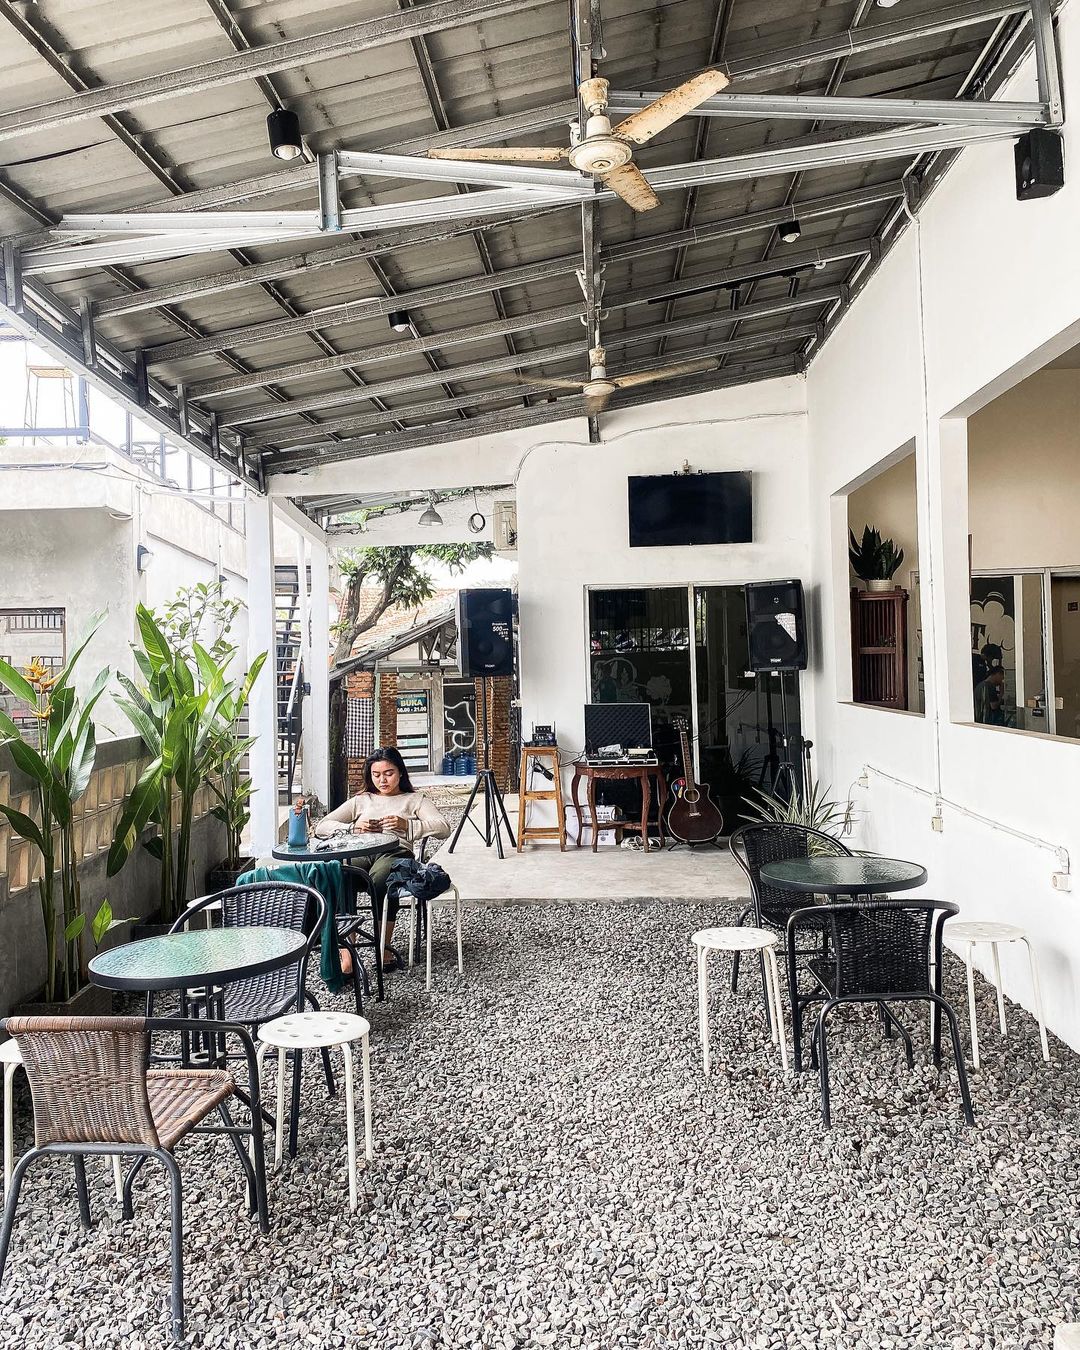 Coffee Shop Terbaru di Bogor